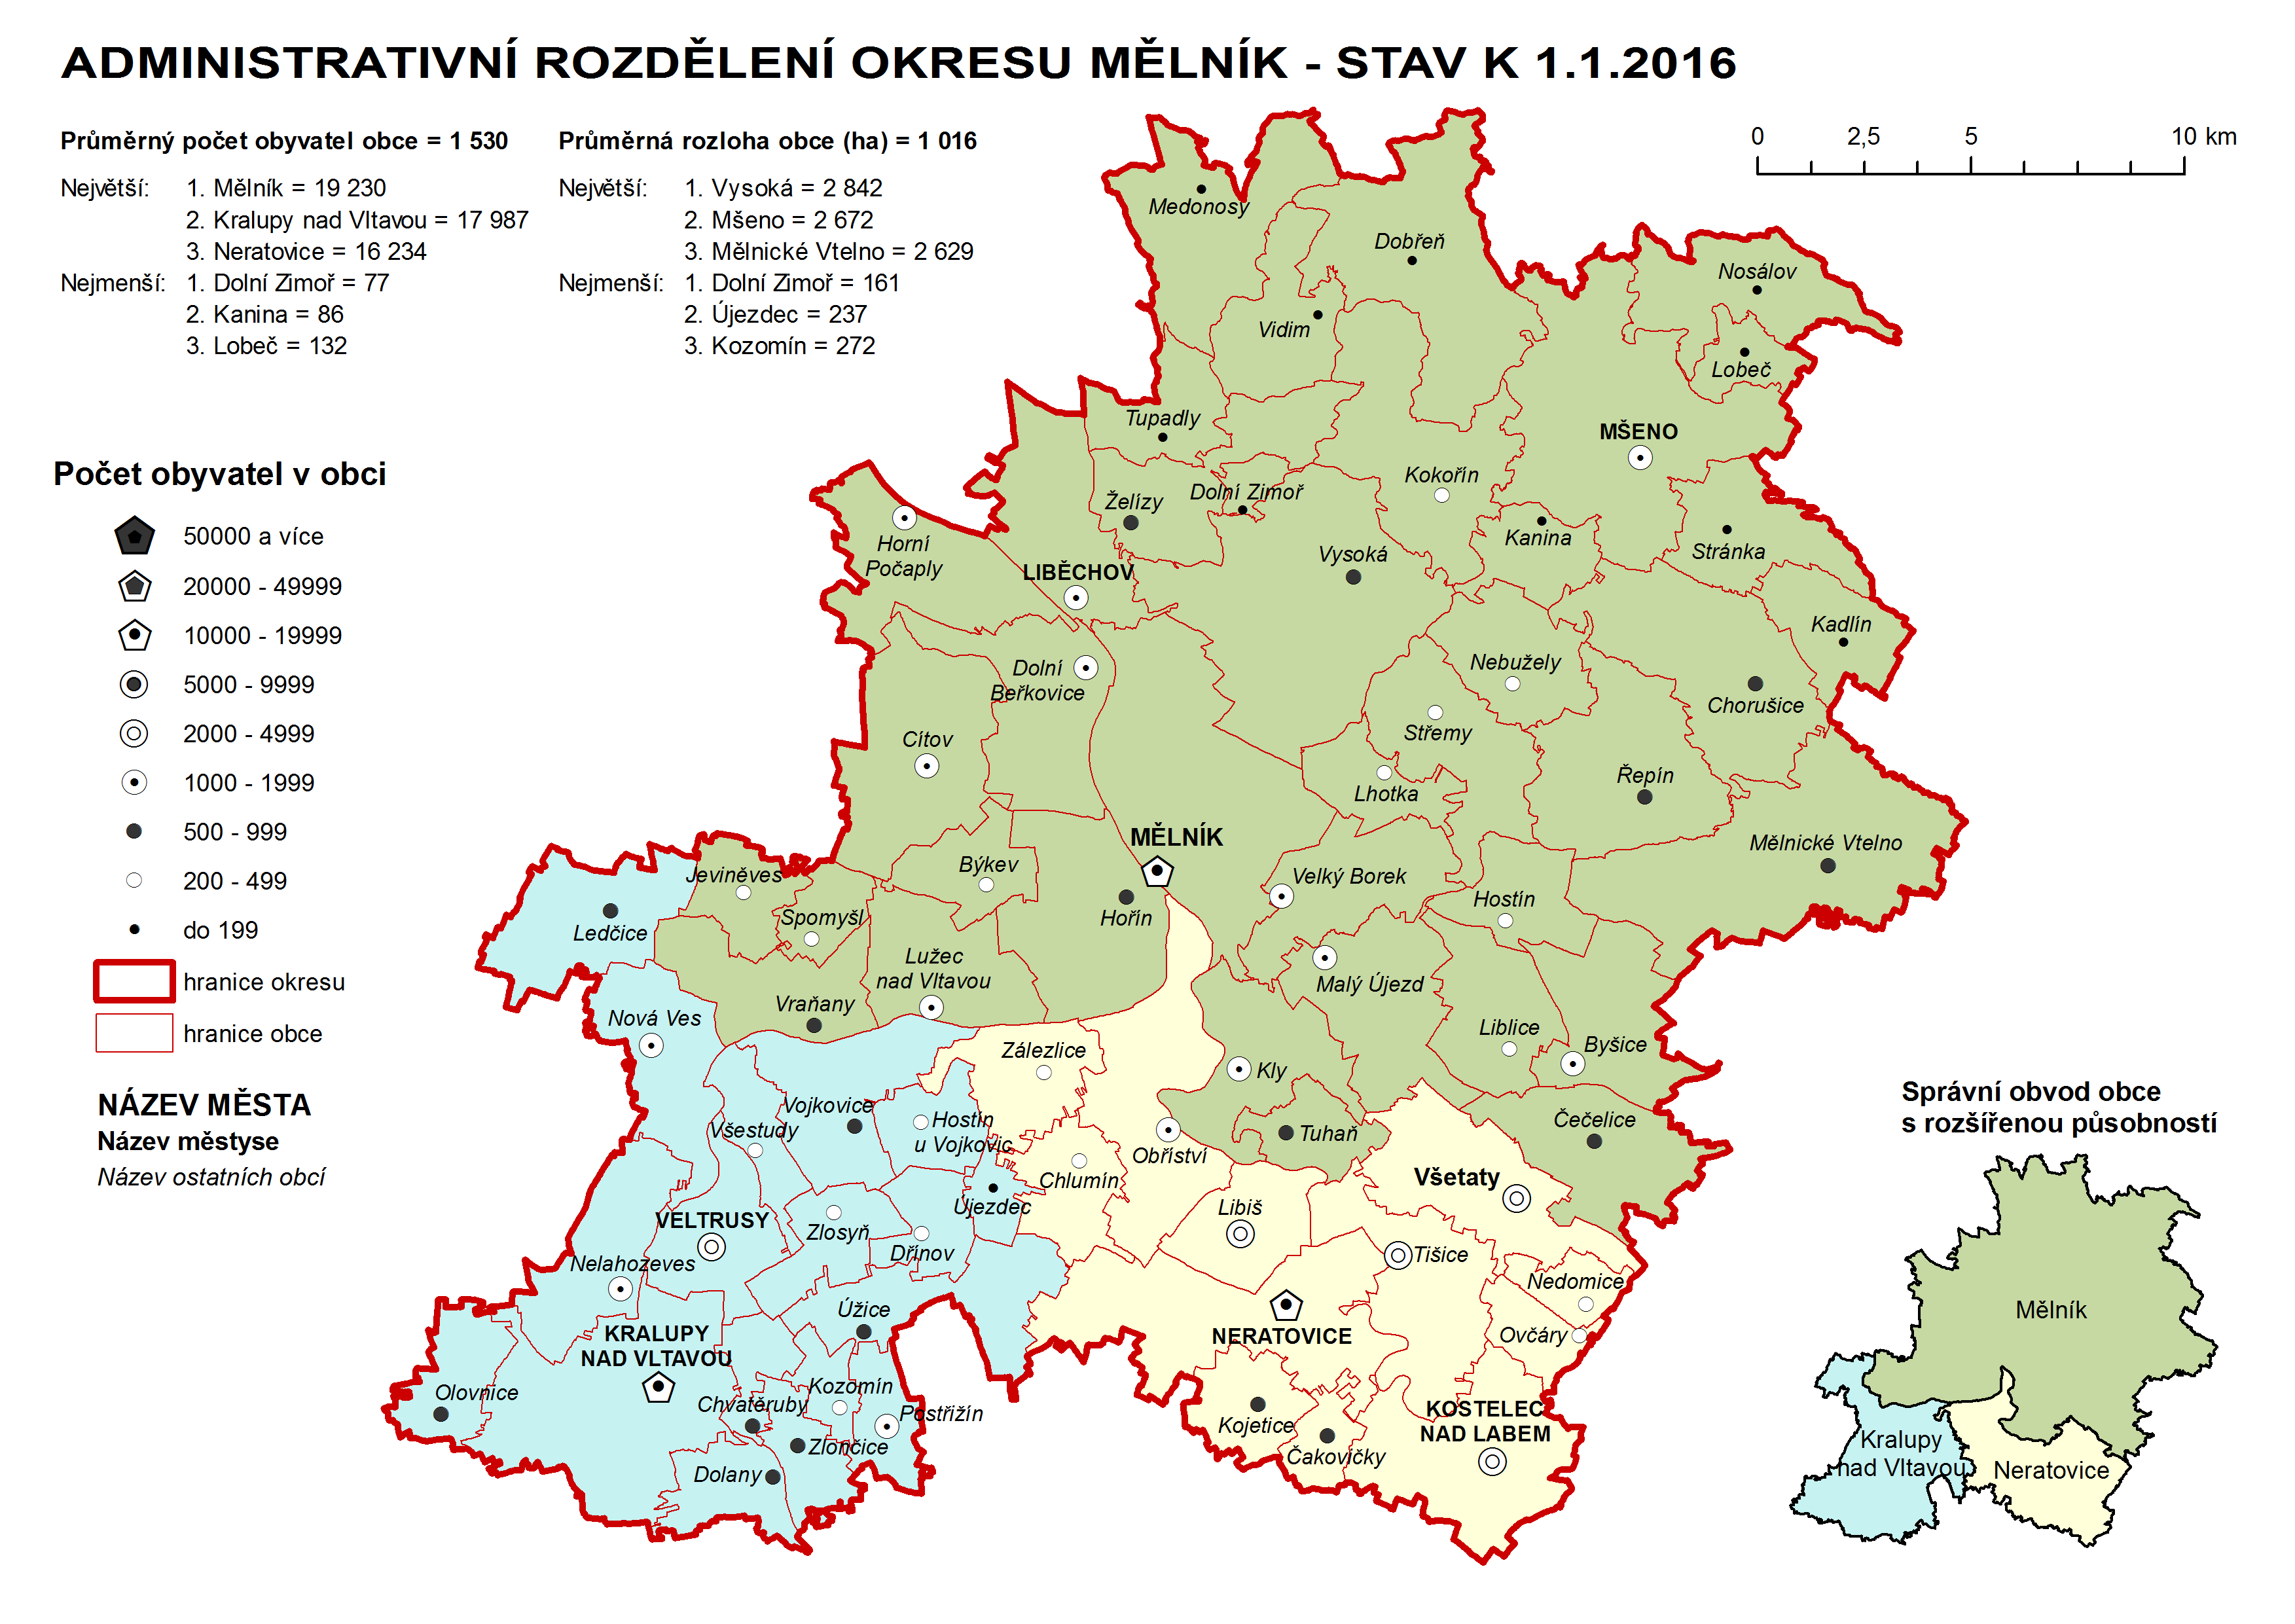 Administrativni rozdělení okresu Mělník - stav k 1.1.2016